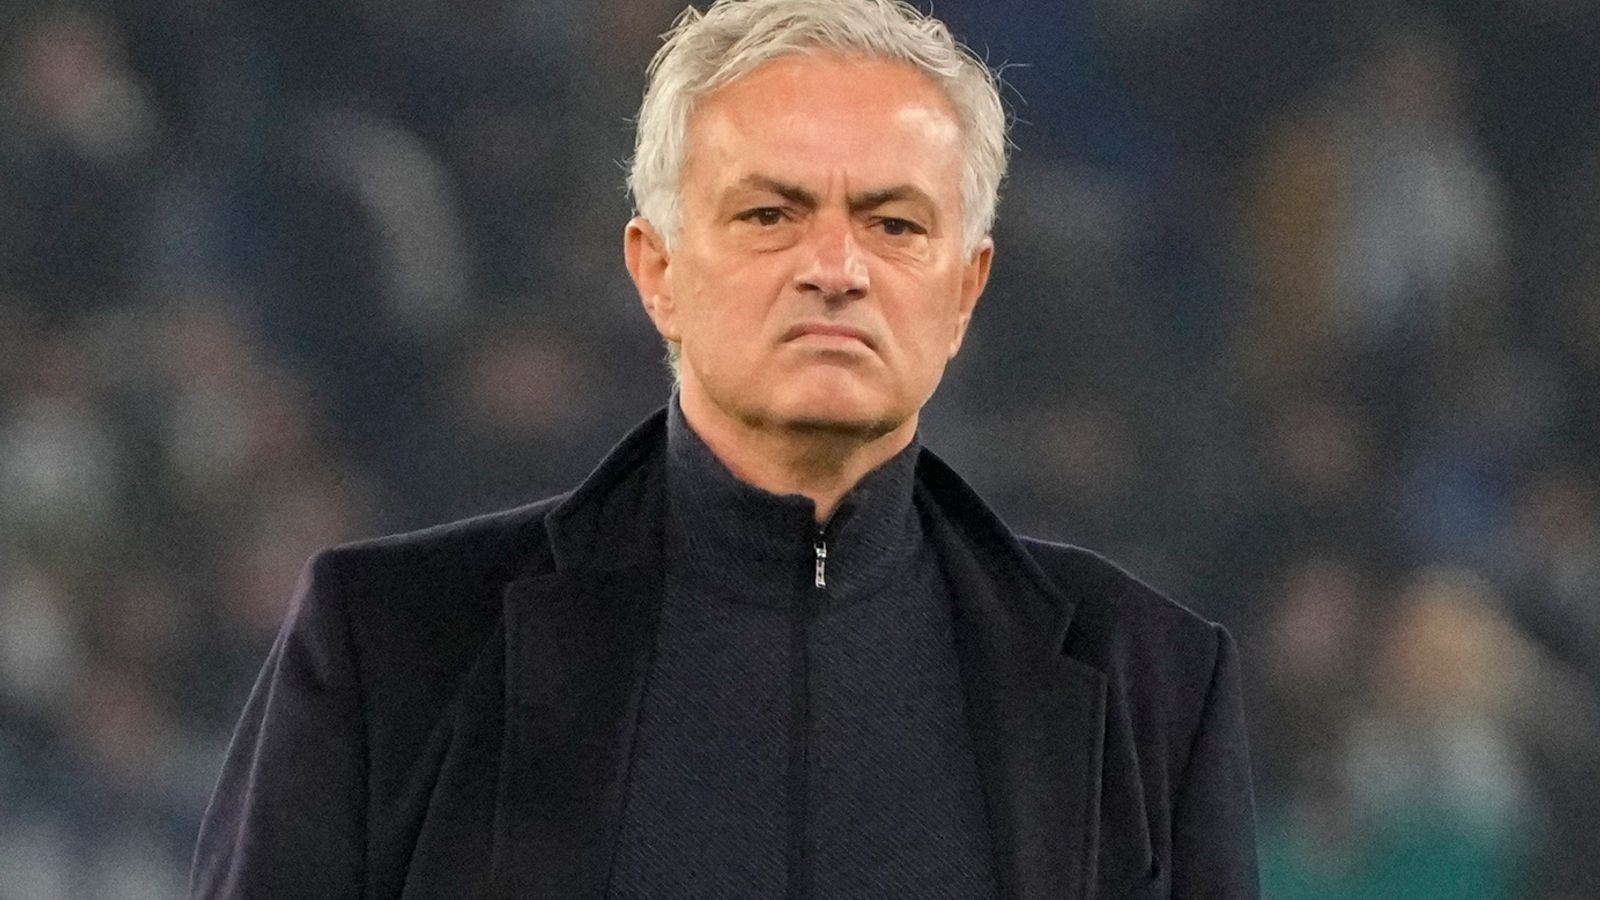 Mourinho sacked by Roma